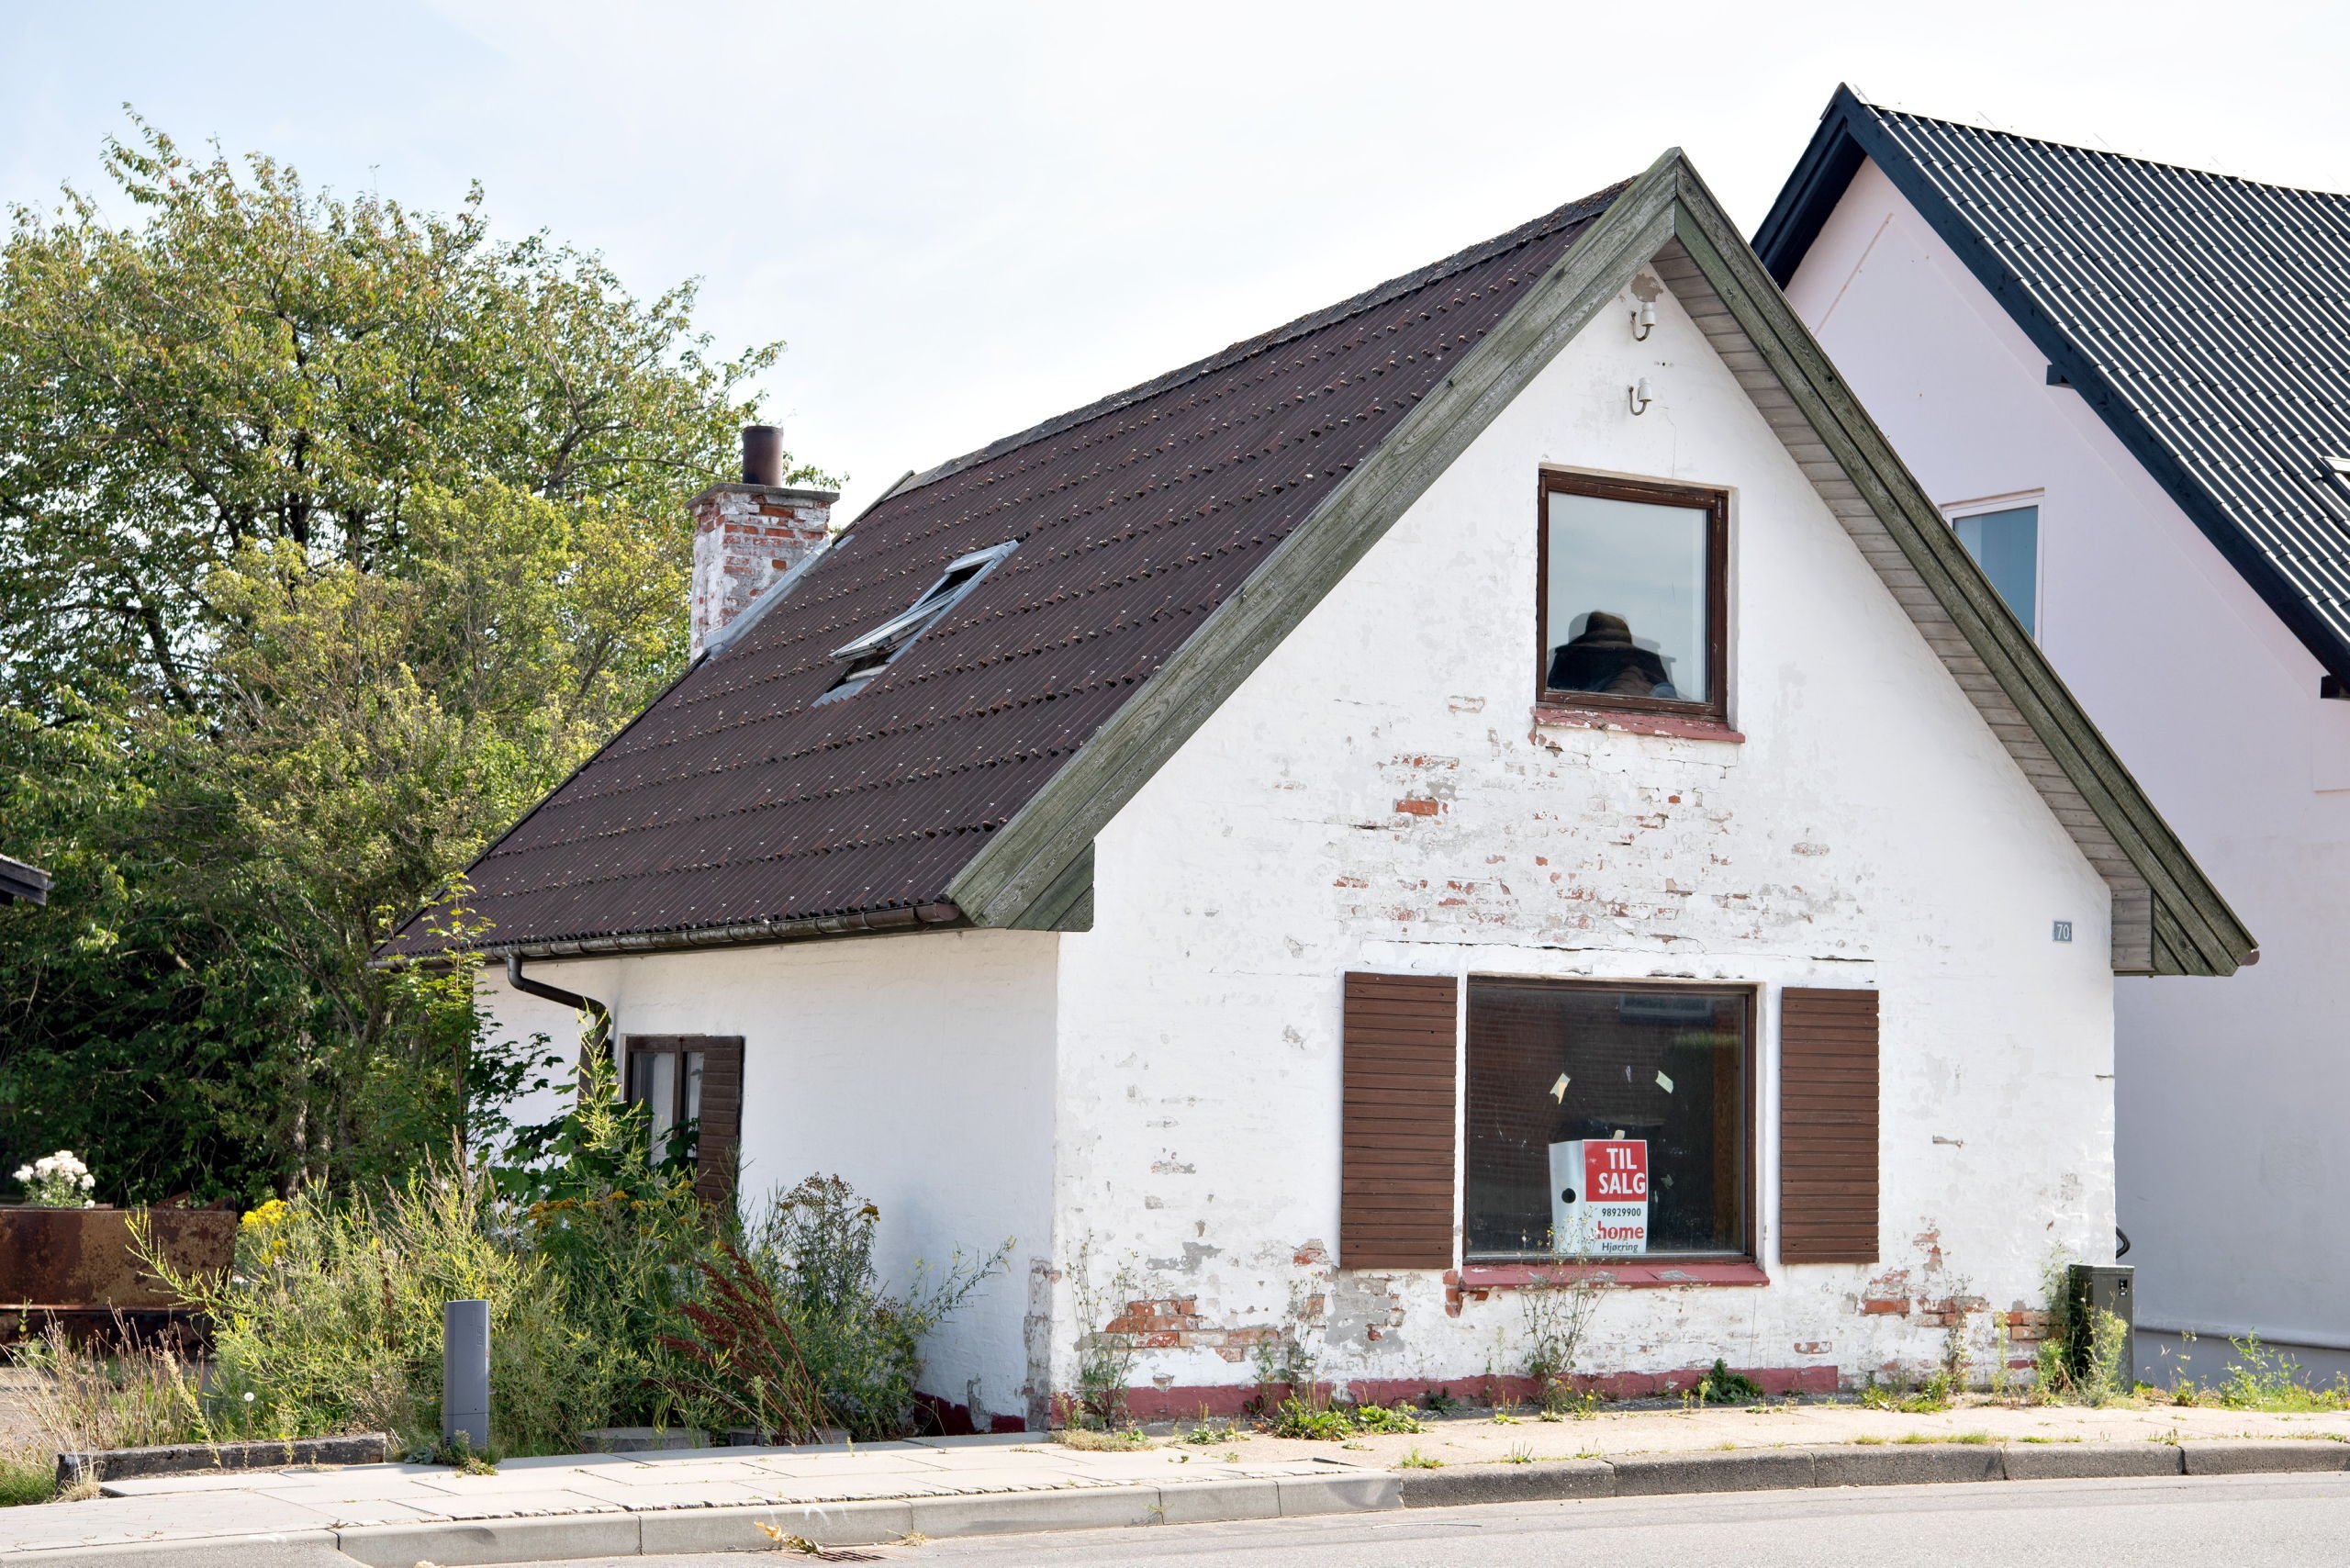 Danmarks billigste hus var ikke billigt nok